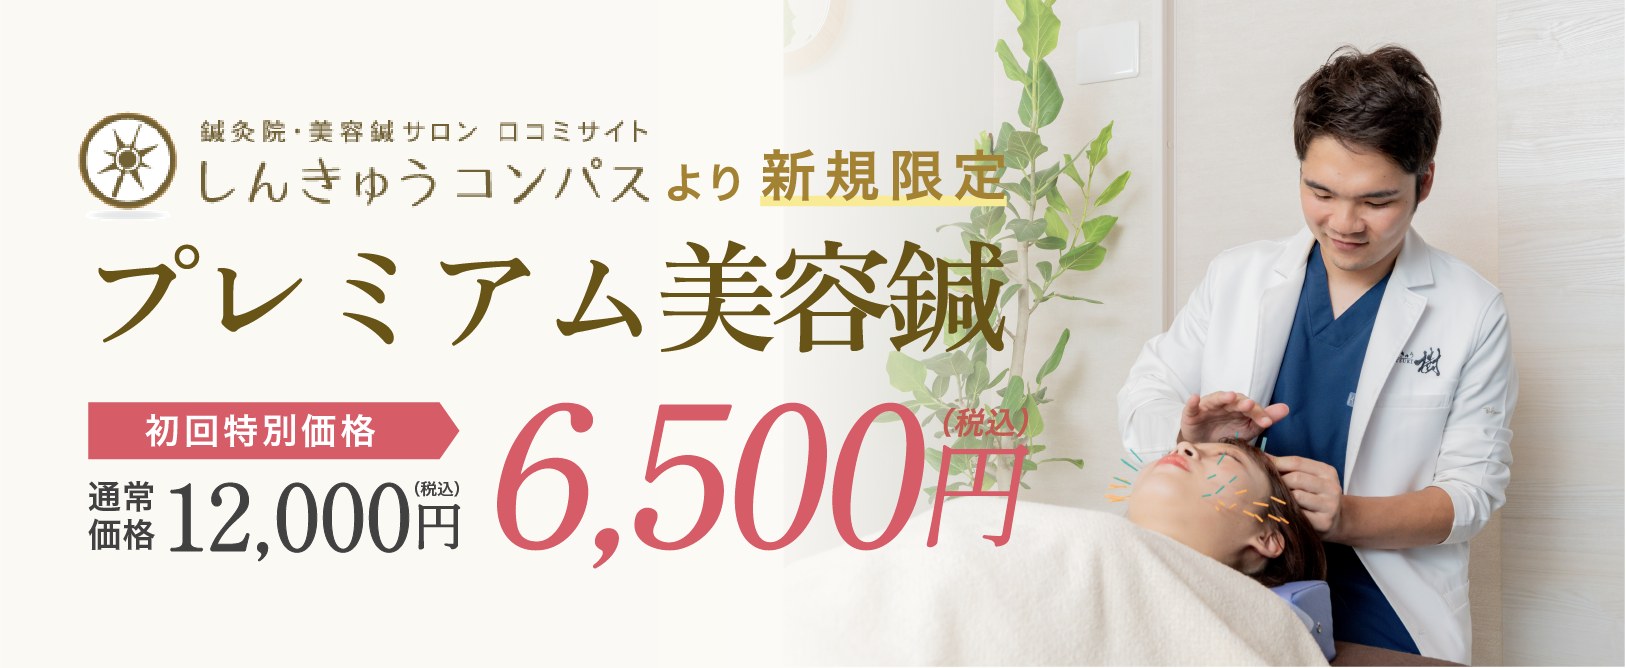 プレミアム美容鍼初回特別価格6,500円